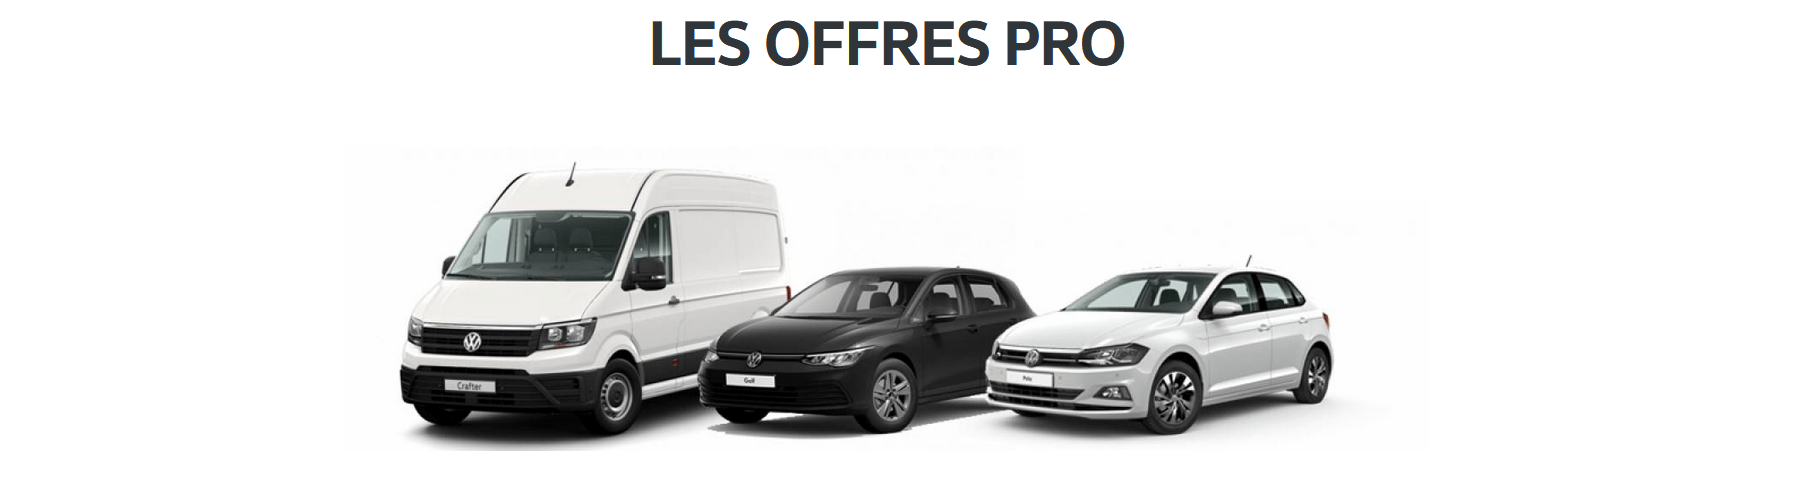 Volkswagen Utilitaires Avion AUTO-EXPO - Les offres exclusives chez votre partenaire VGRF Fleet Hauts-de-France